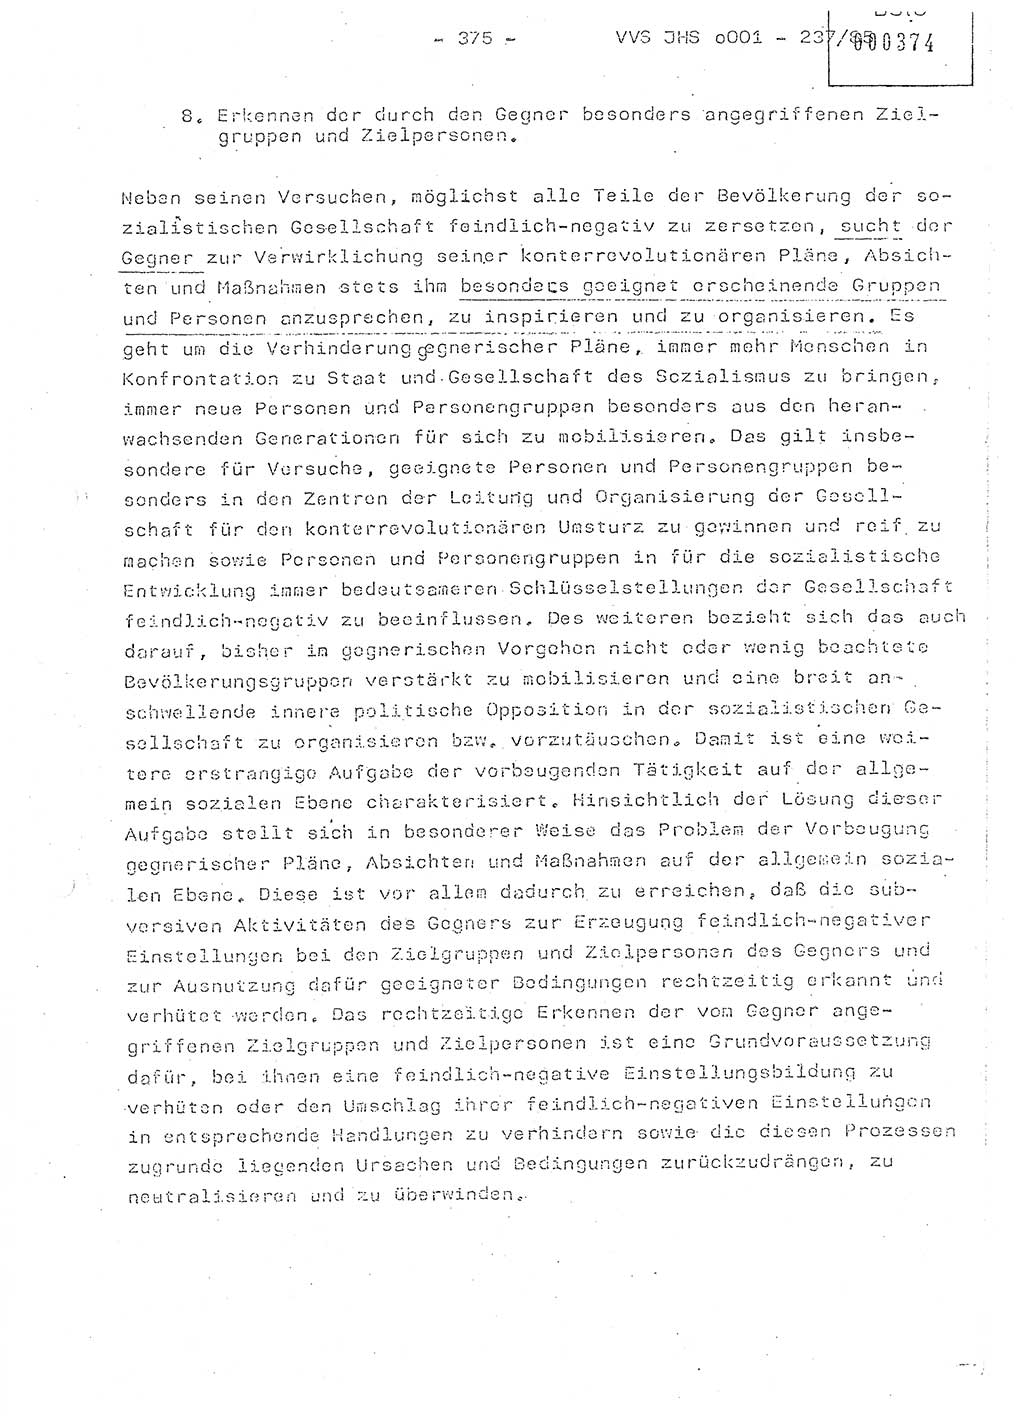 Dissertation Oberstleutnant Peter Jakulski (JHS), Oberstleutnat Christian Rudolph (HA Ⅸ), Major Horst Böttger (ZMD), Major Wolfgang Grüneberg (JHS), Major Albert Meutsch (JHS), Ministerium für Staatssicherheit (MfS) [Deutsche Demokratische Republik (DDR)], Juristische Hochschule (JHS), Vertrauliche Verschlußsache (VVS) o001-237/85, Potsdam 1985, Seite 375 (Diss. MfS DDR JHS VVS o001-237/85 1985, S. 375)